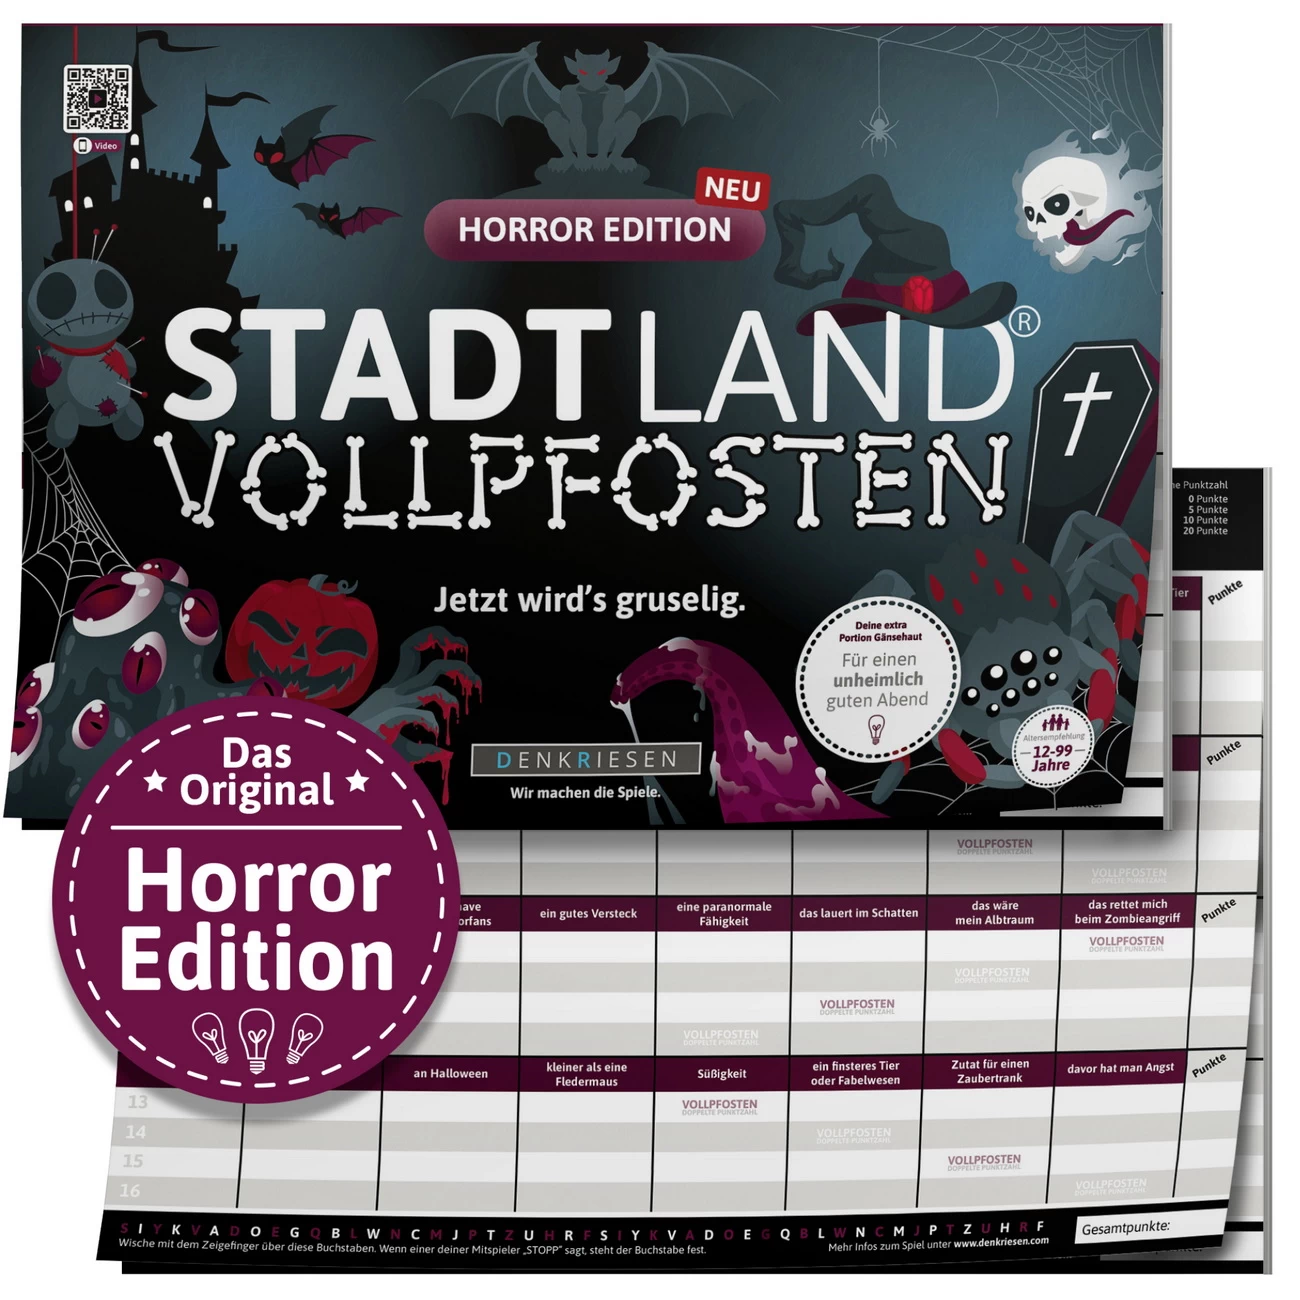 Horror Edition - STADT LAND VOLLPFOSTEN (DENKRIESEN)